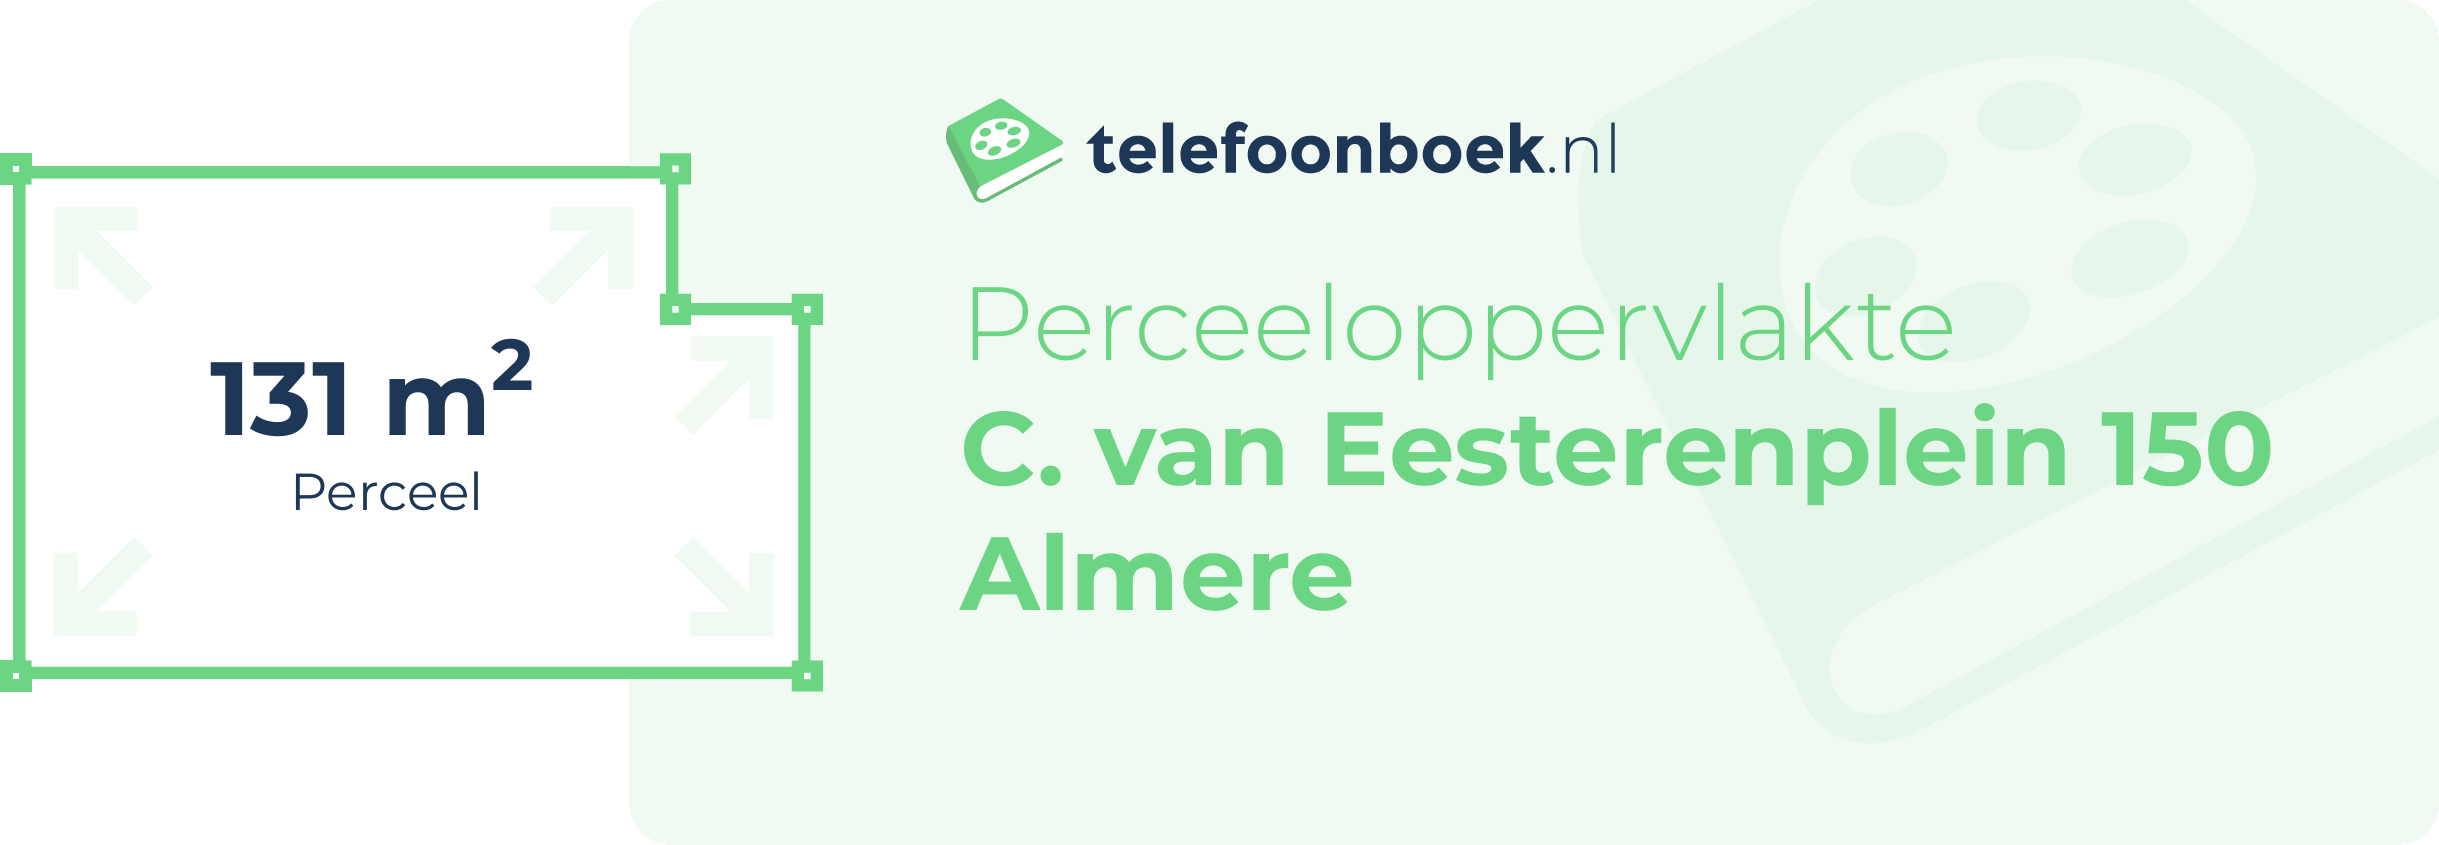 Perceeloppervlakte C. Van Eesterenplein 150 Almere